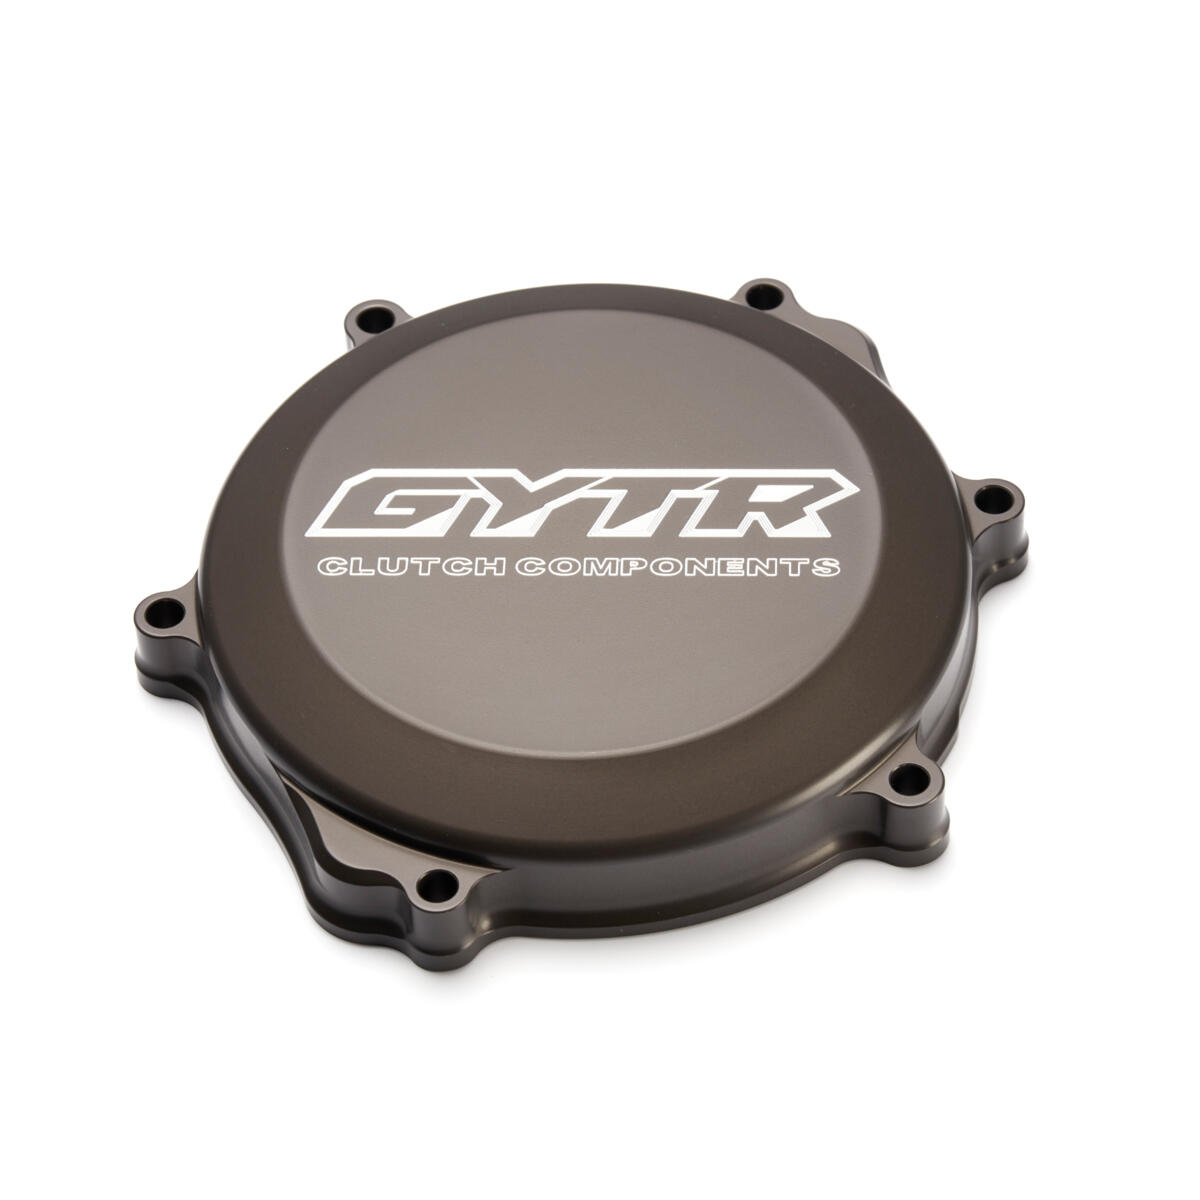 GYTR®-kytkinkansi voidaan asentaa tavallisen kannen tilalle, kun tavoitteena on tehdaspyörän ulkonäkö.